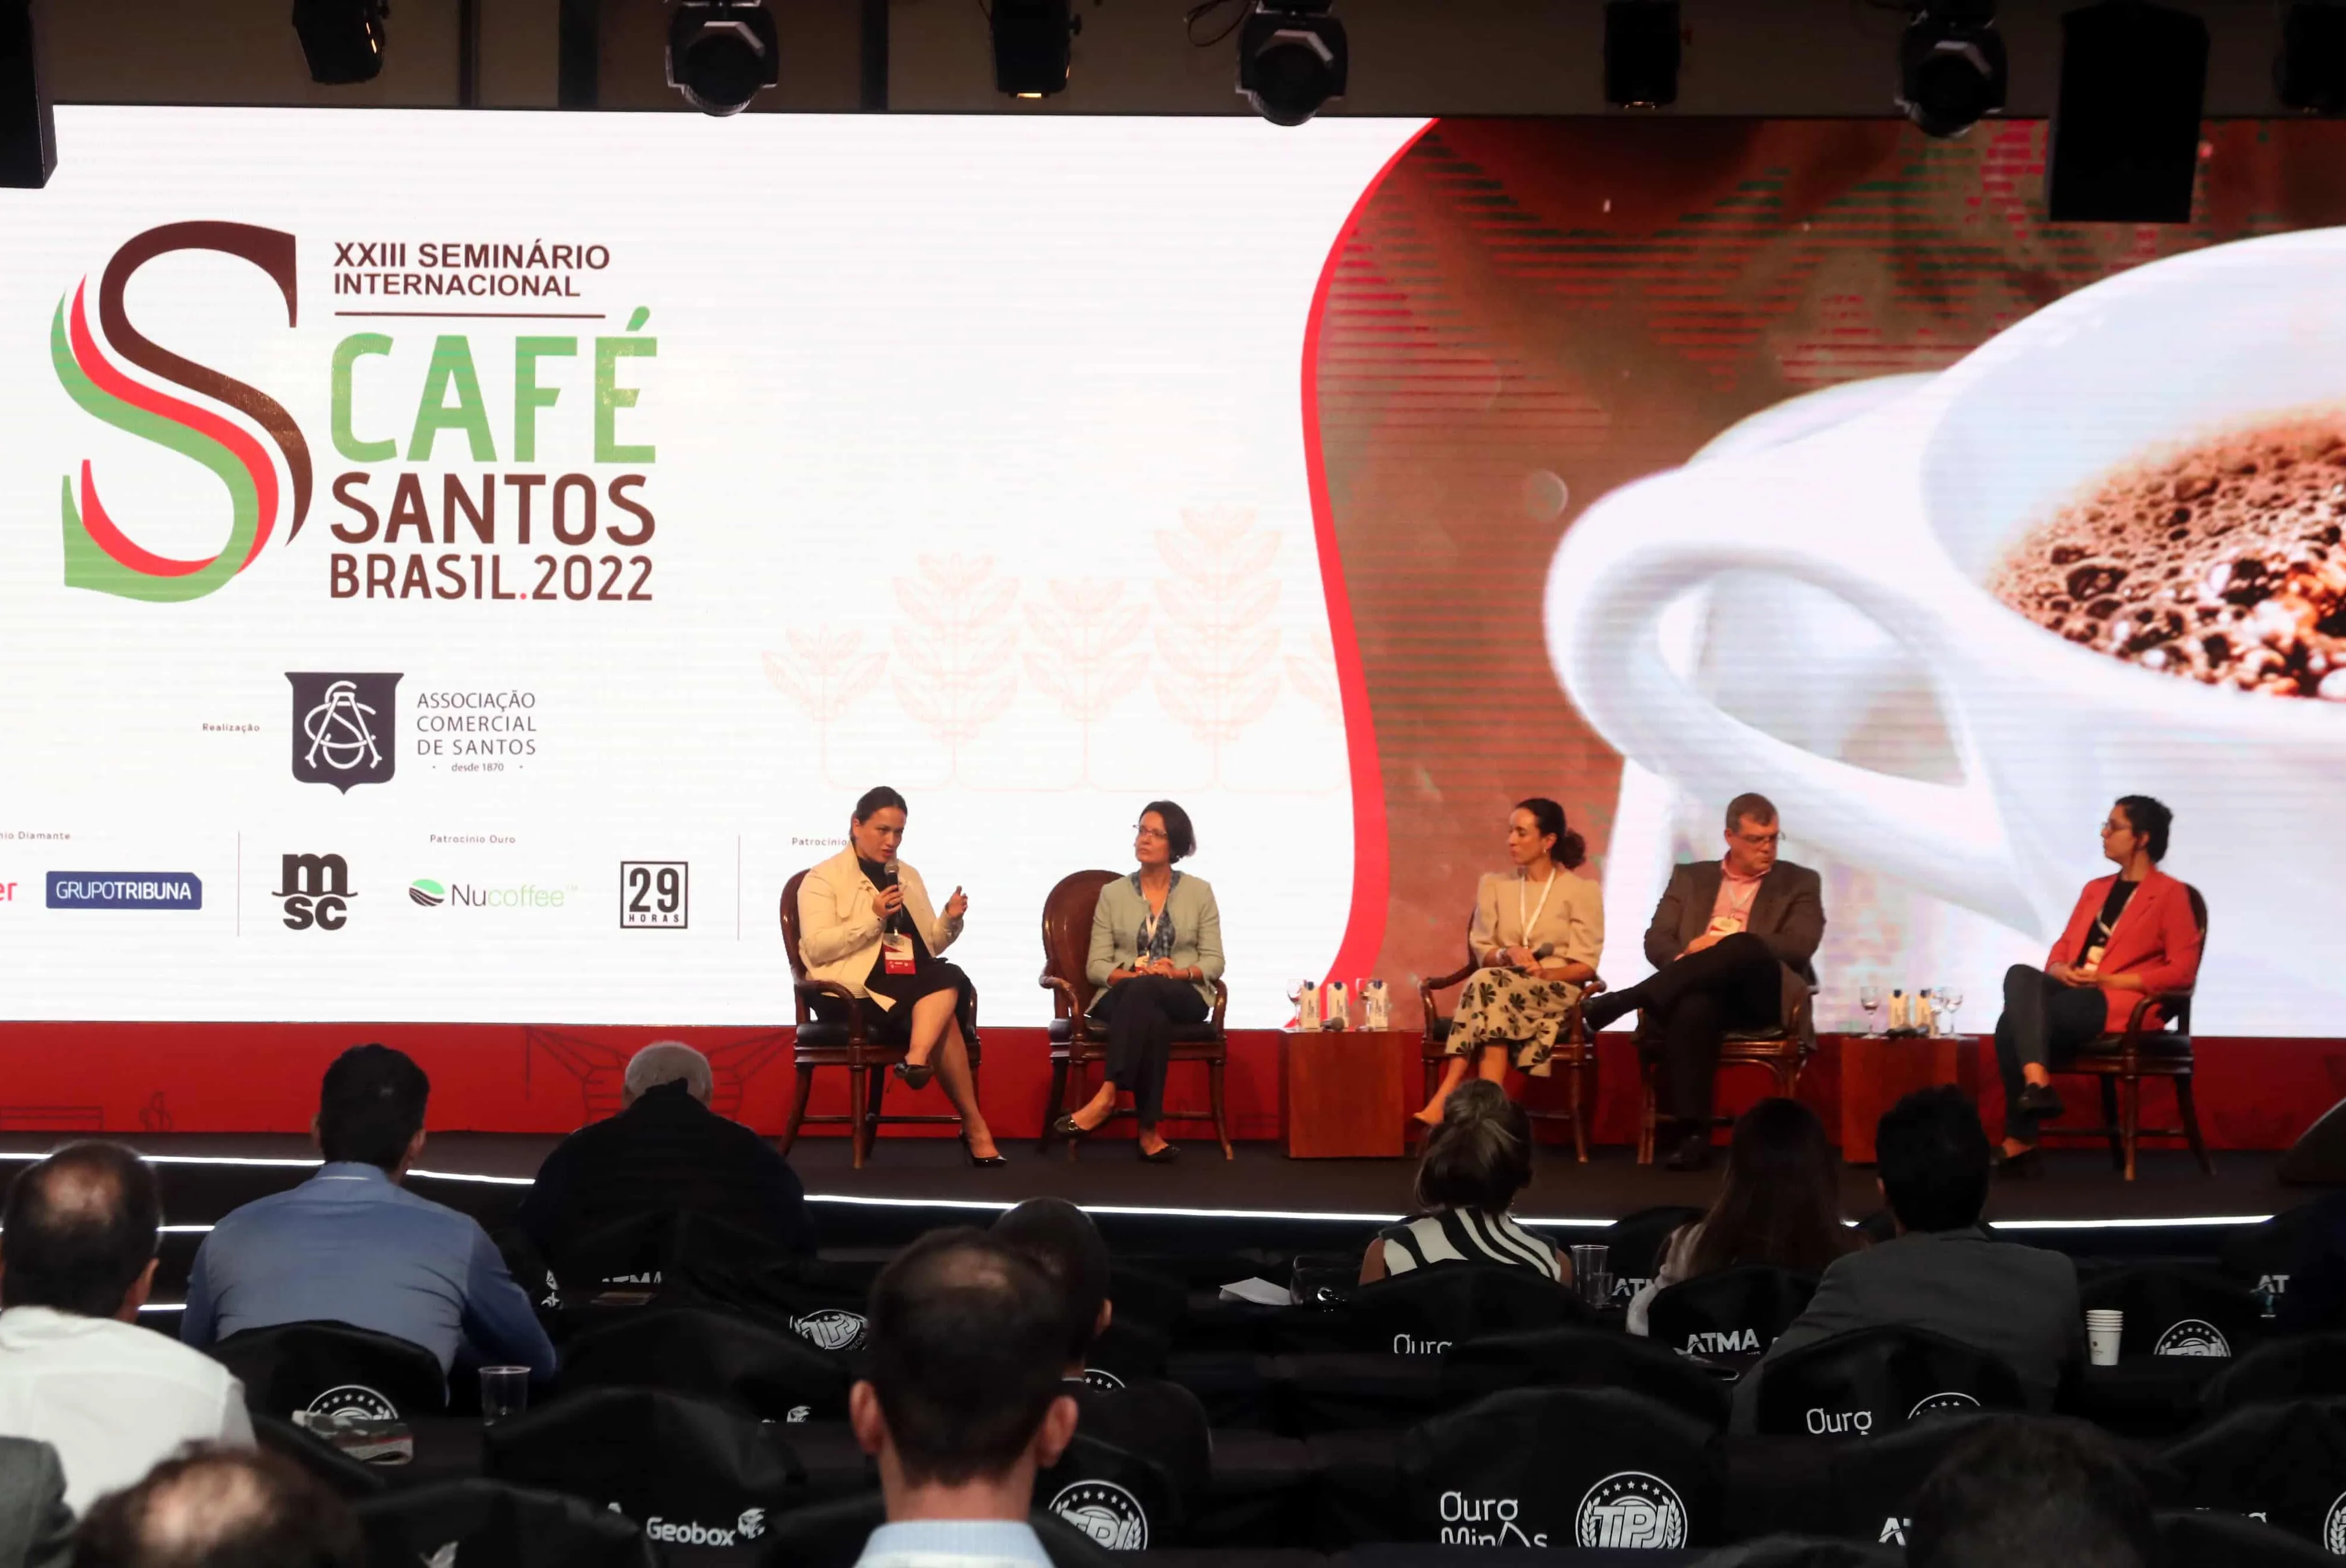 23º Seminário Internacional do Café, organizado pela Associação Comercial de Santos (ACS) e realizado no Sofitel Guarujá Jequitimar